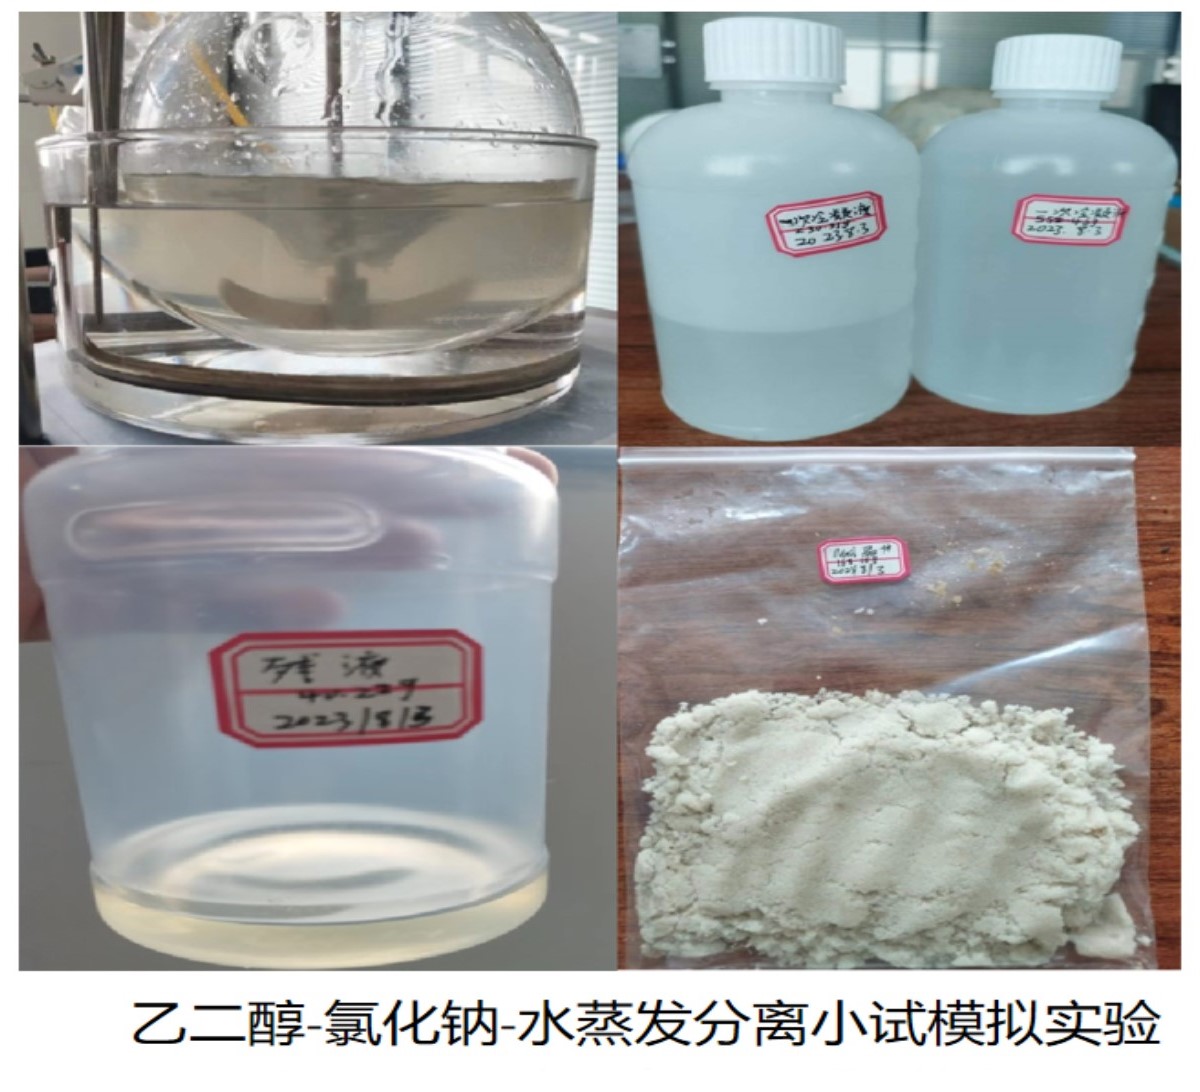 乙二醇-氯化鈉水溶液資源化回收設計前小試試驗條件模擬